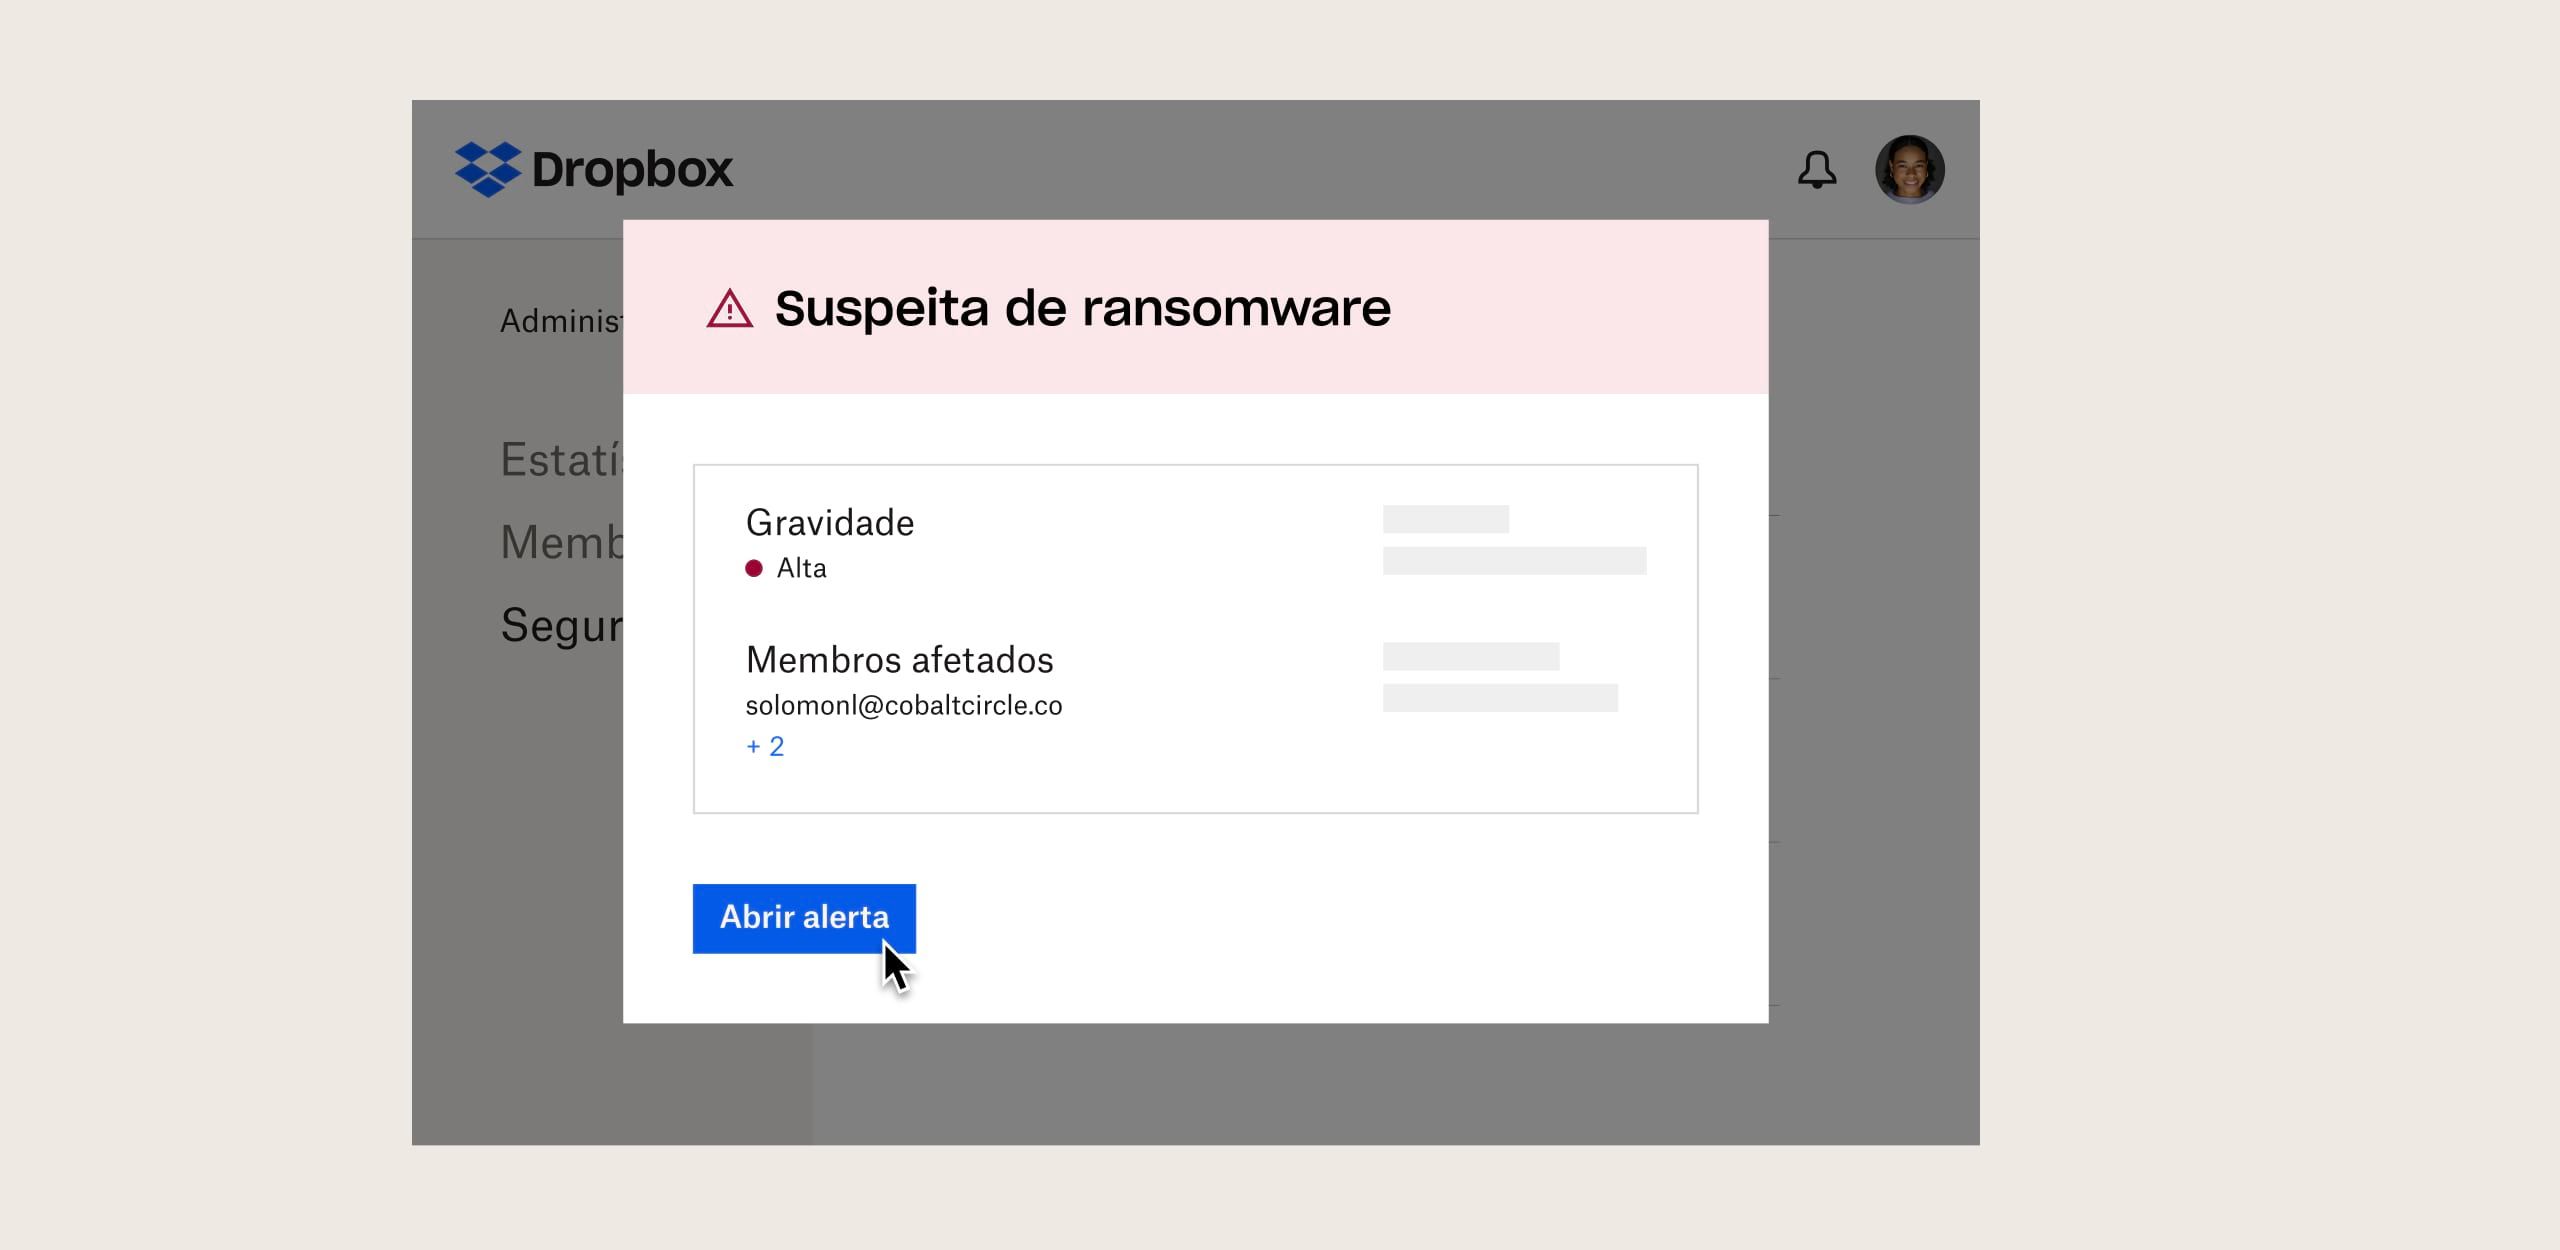 Um usuário percebe uma solicitação de ransomware de segurança suspeita no Dropbox